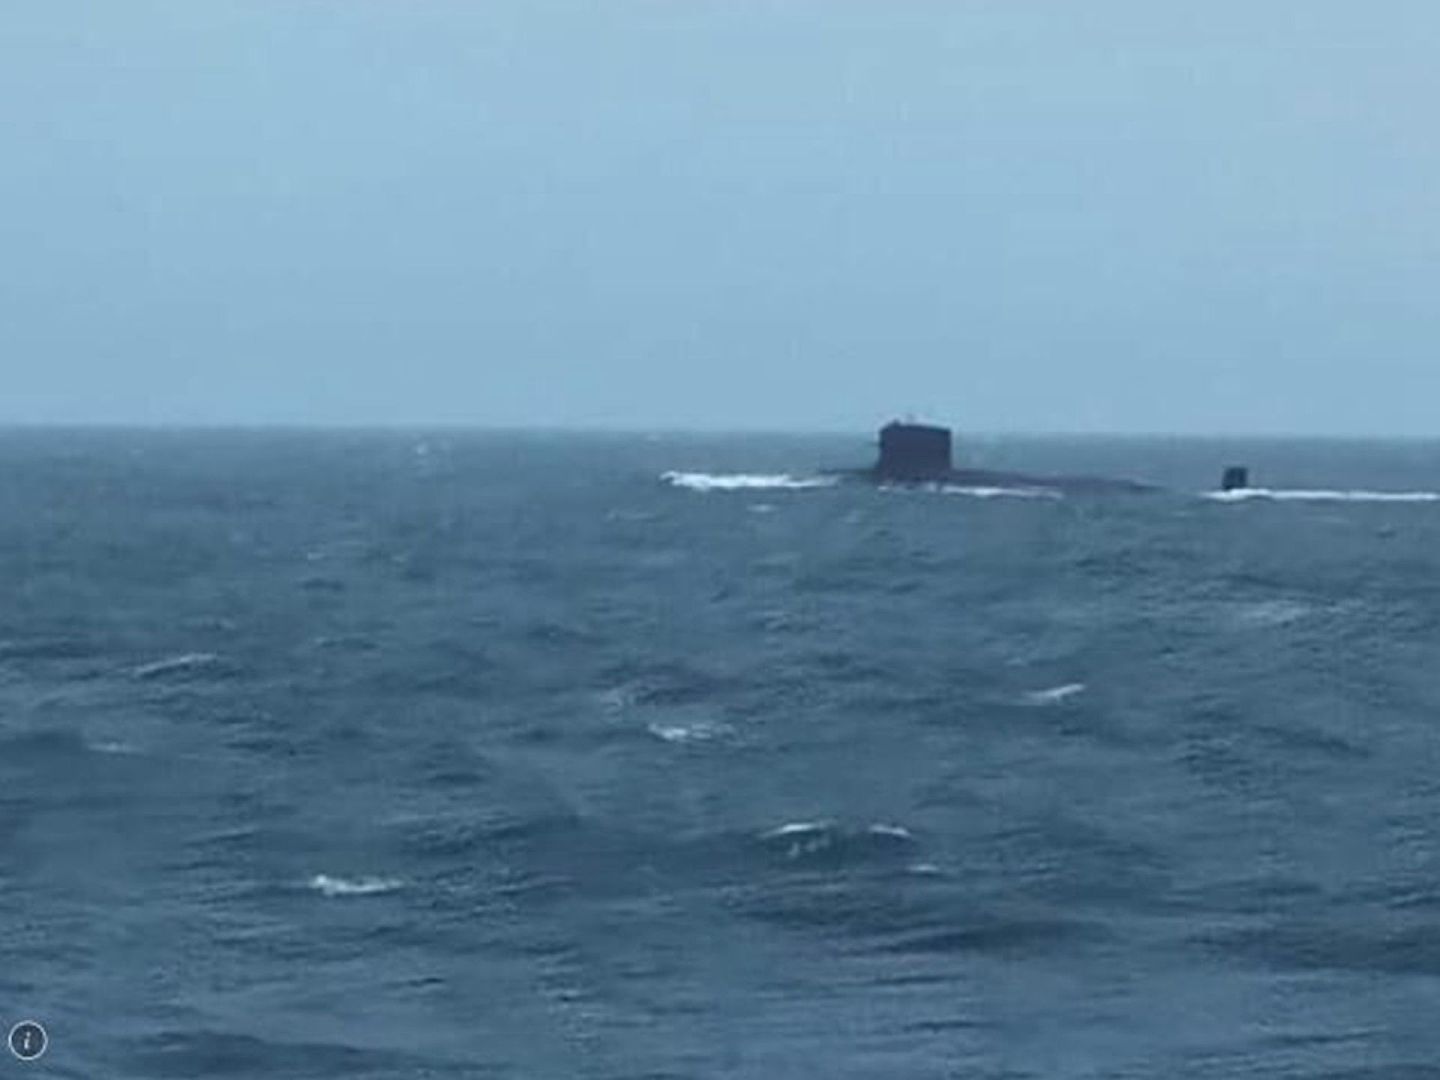 除水下无人机外，中国大陆的攻击核潜艇也曾出现在台湾海峡。（微博@战车LI）